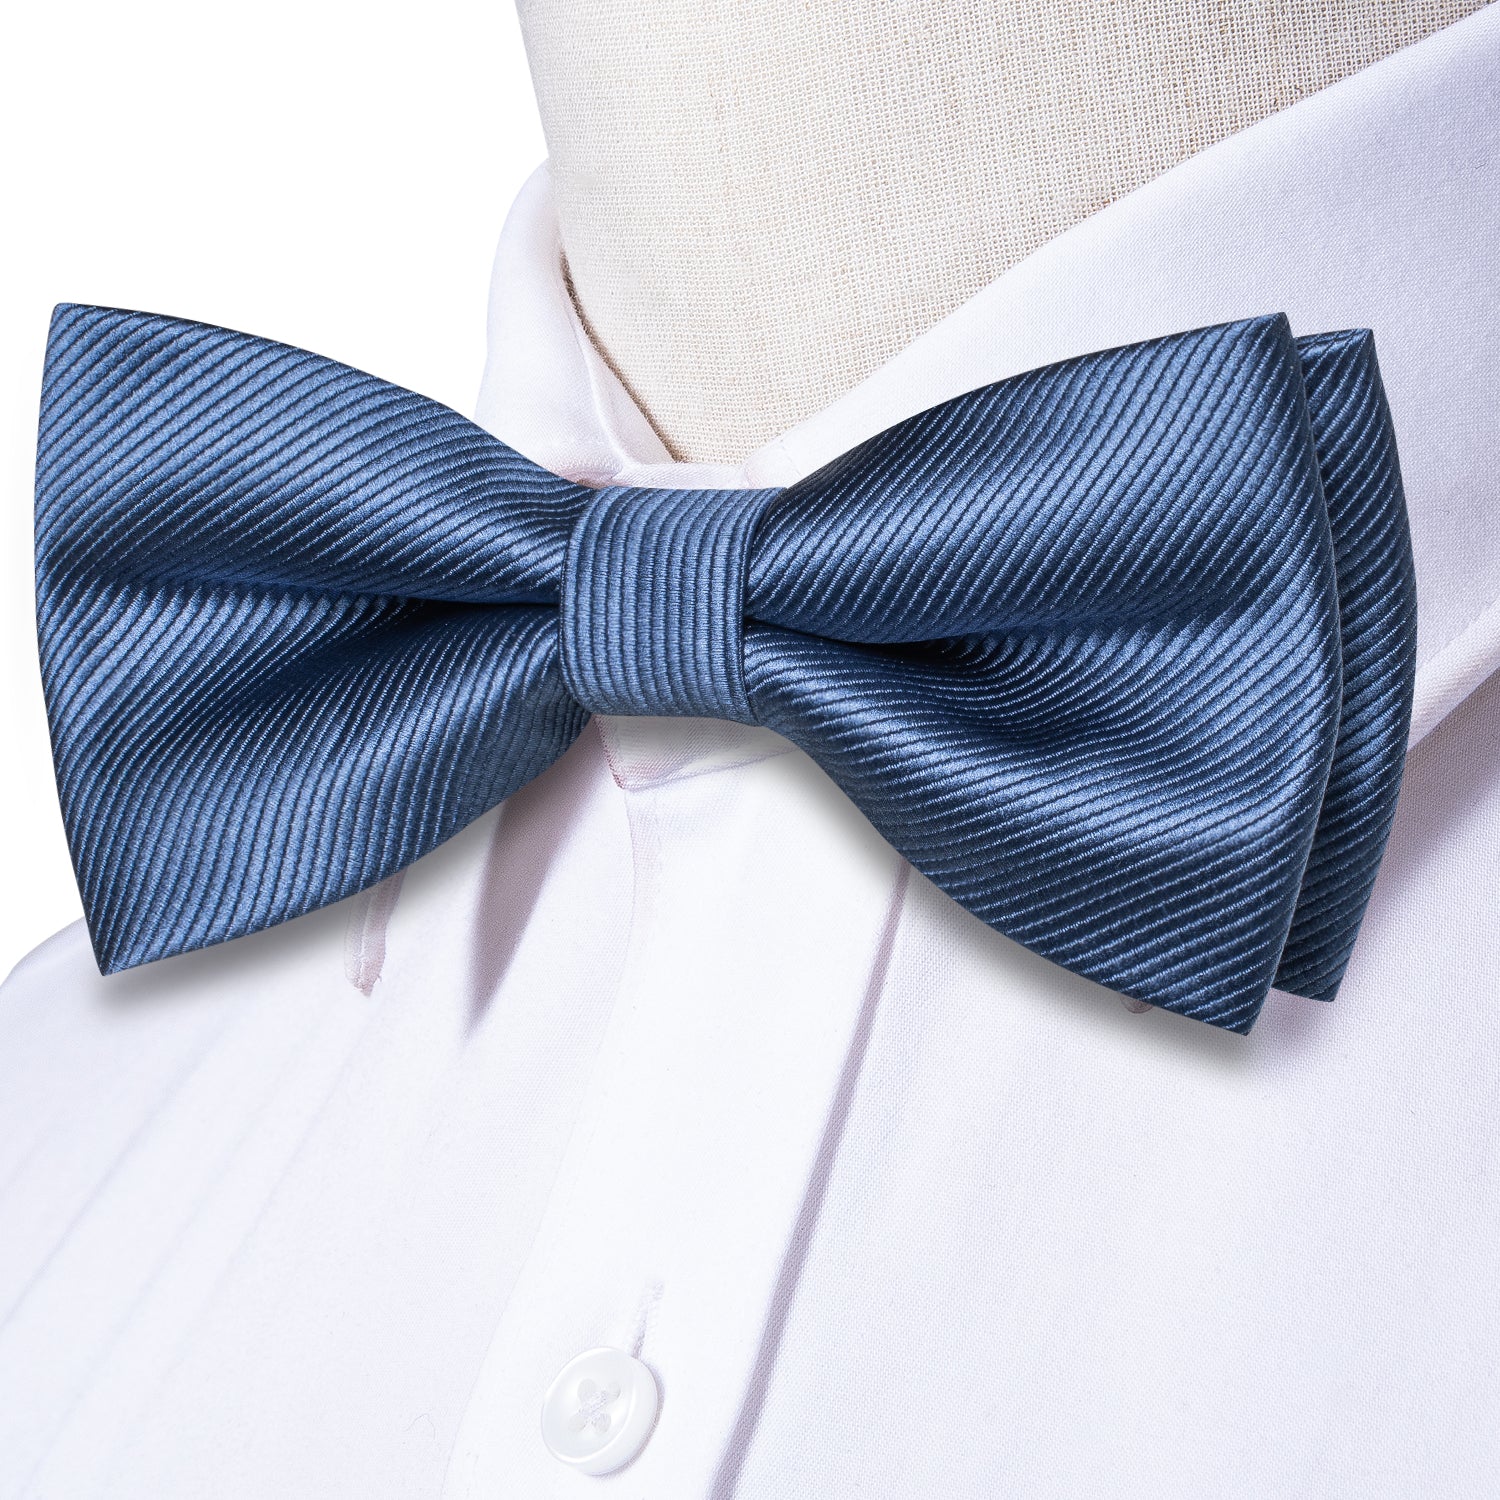 Dark Dusty Blue Striped Pre-tied Bow Tie Hanky Cufflinks Set